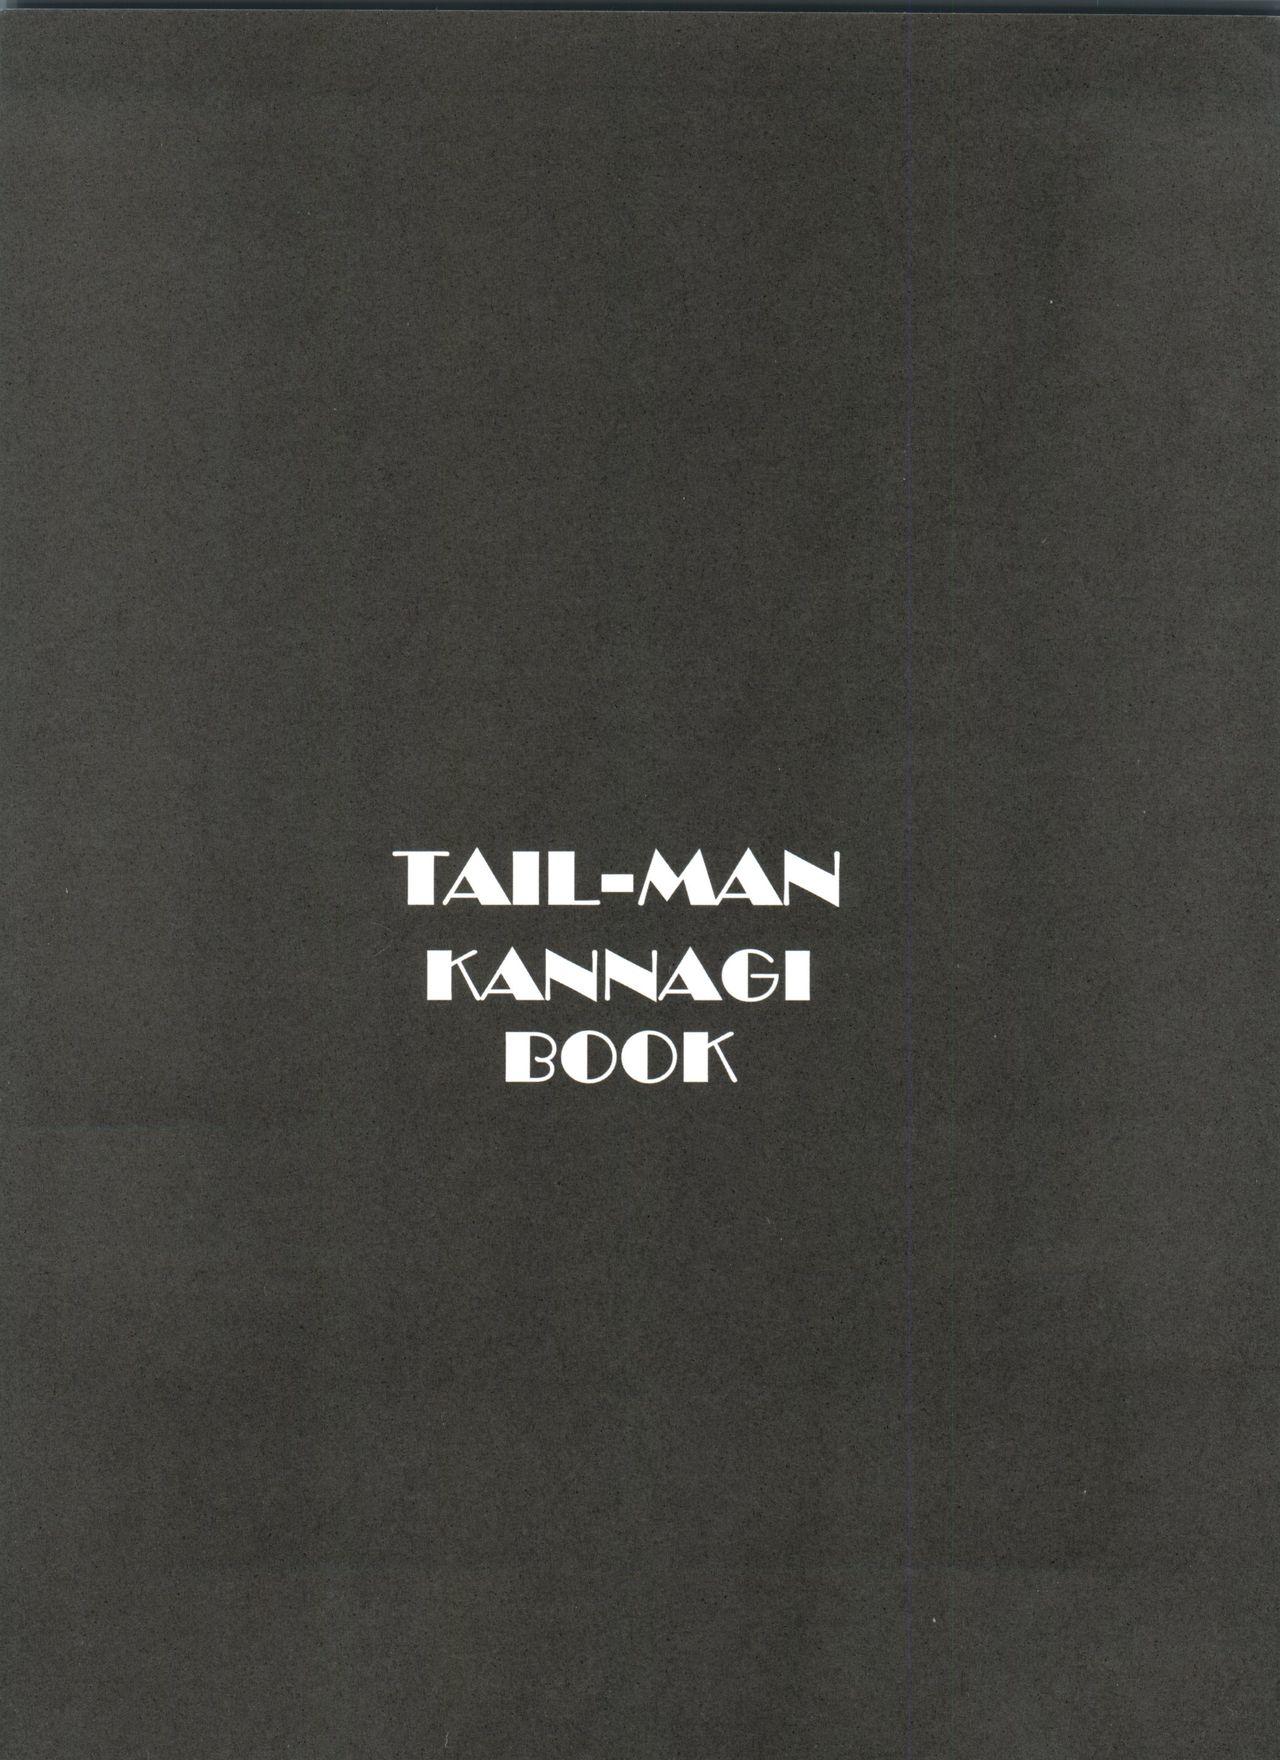 TAIL-MAN KANNAGI BOOK 1